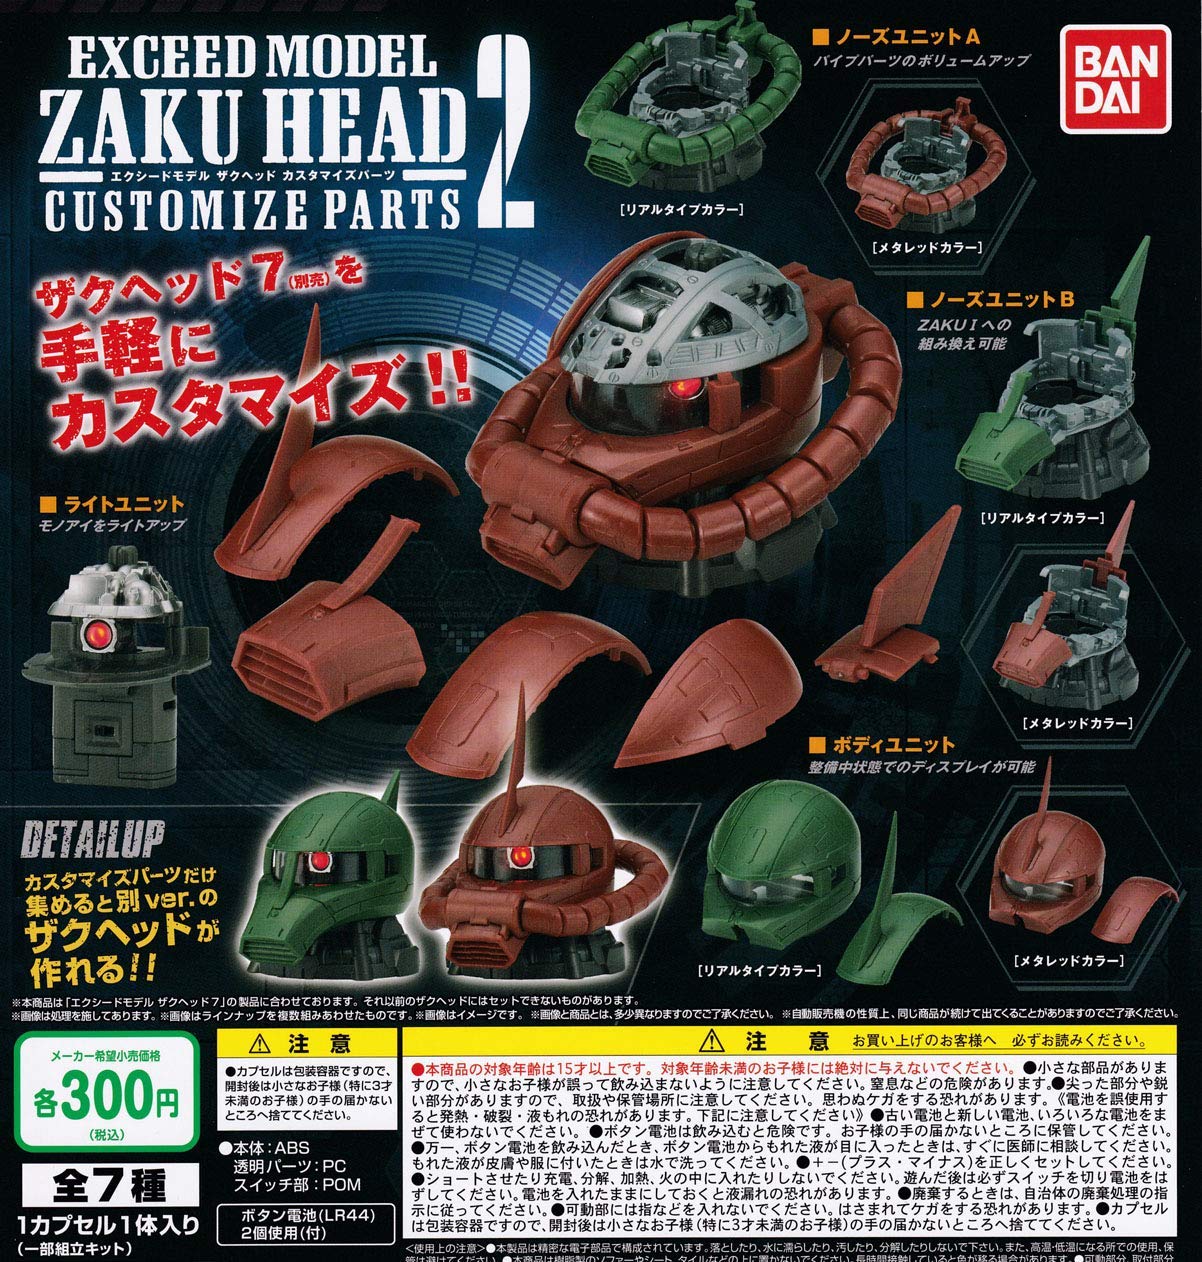 機動戦士ガンダム EXCEED MODEL『ZAKU HEAD 7』ガシャポン-006